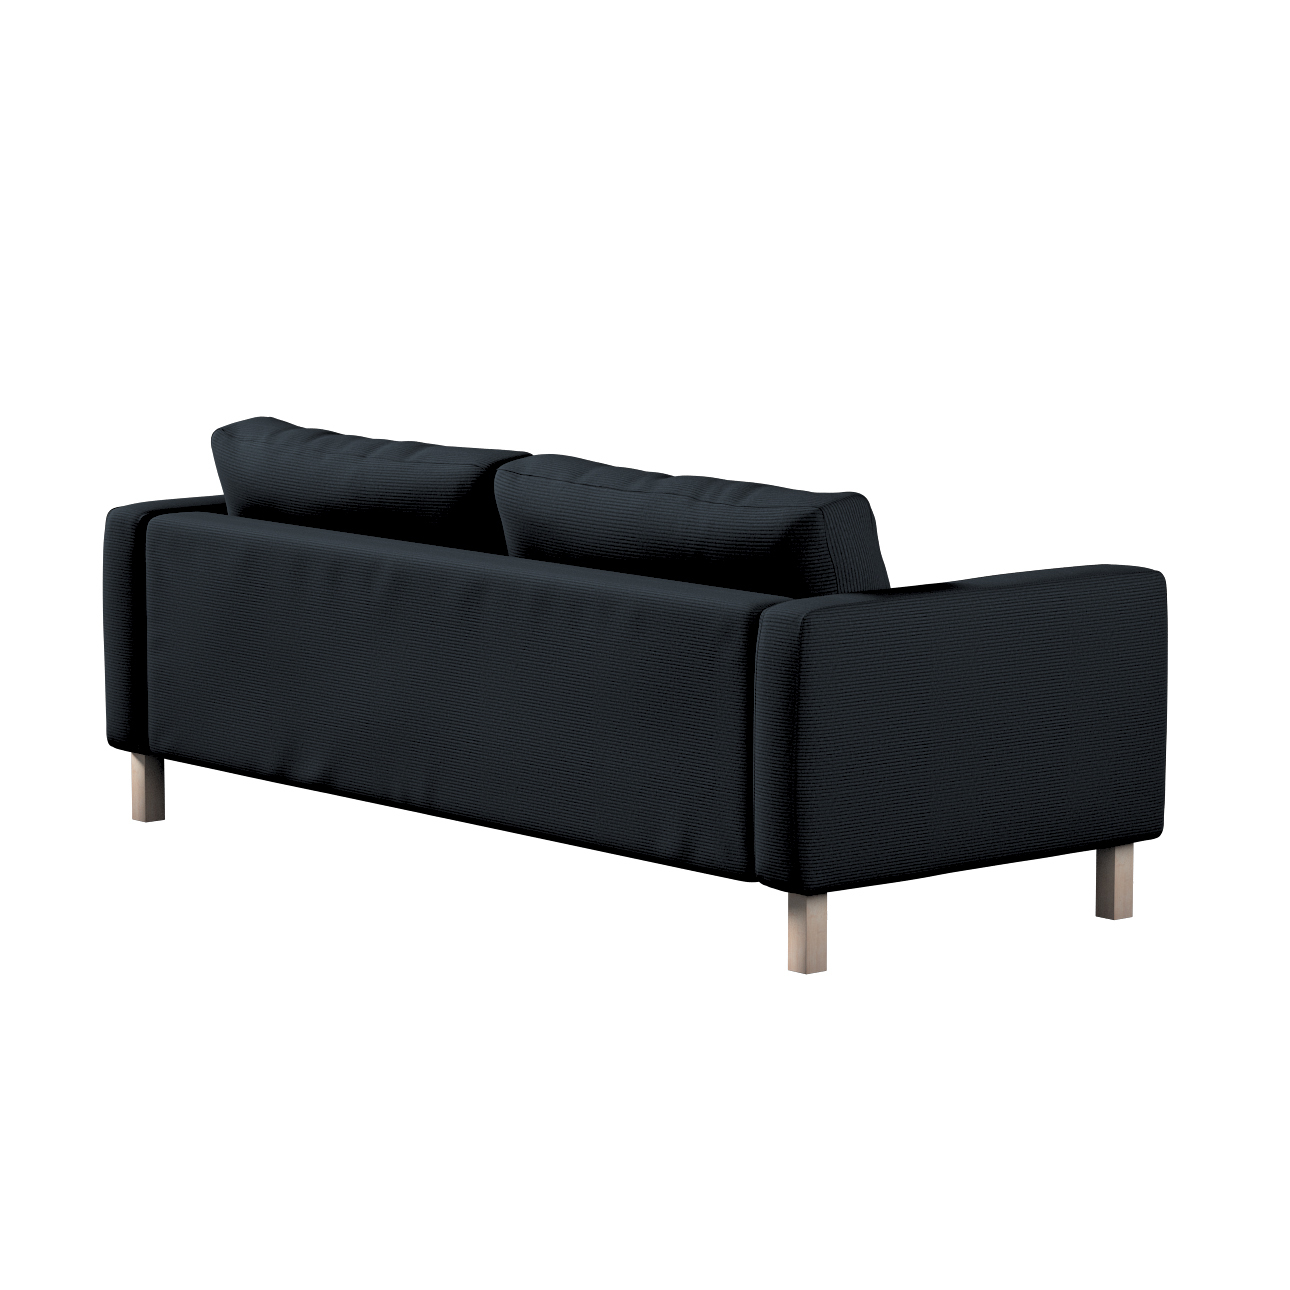 Bezug für Karlstad 3-Sitzer Sofa nicht ausklappbar, kurz, anthrazit, Bezug günstig online kaufen